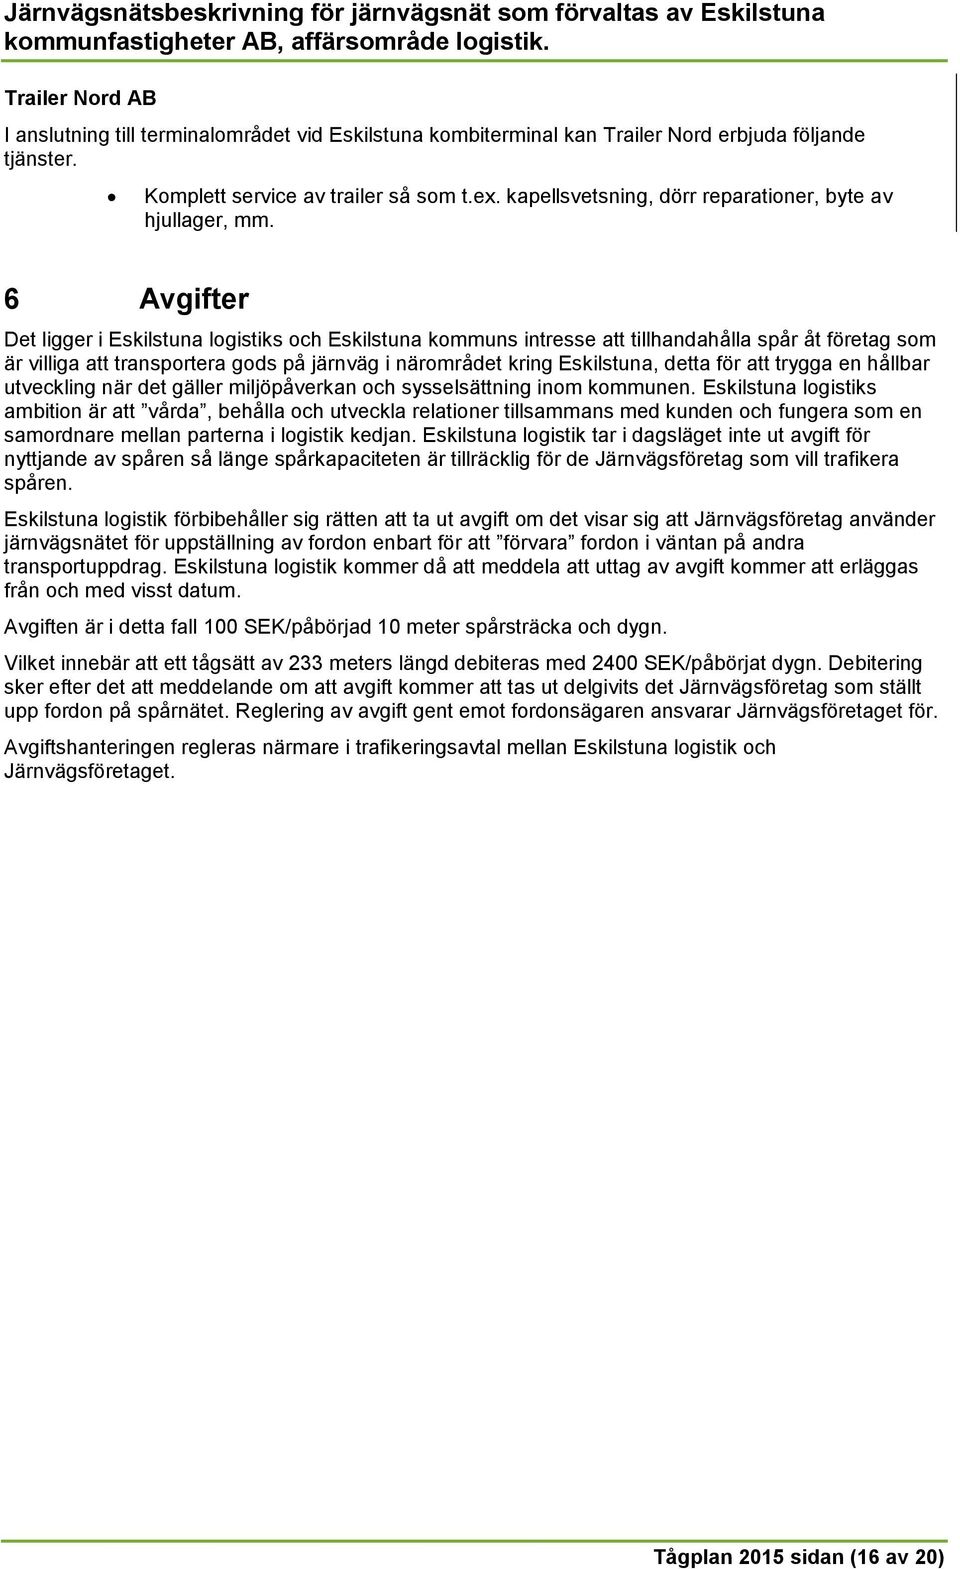 6 Avgifter Det ligger i Eskilstuna logistiks och Eskilstuna kommuns intresse att tillhandahålla spår åt företag som är villiga att transportera gods på järnväg i närområdet kring Eskilstuna, detta